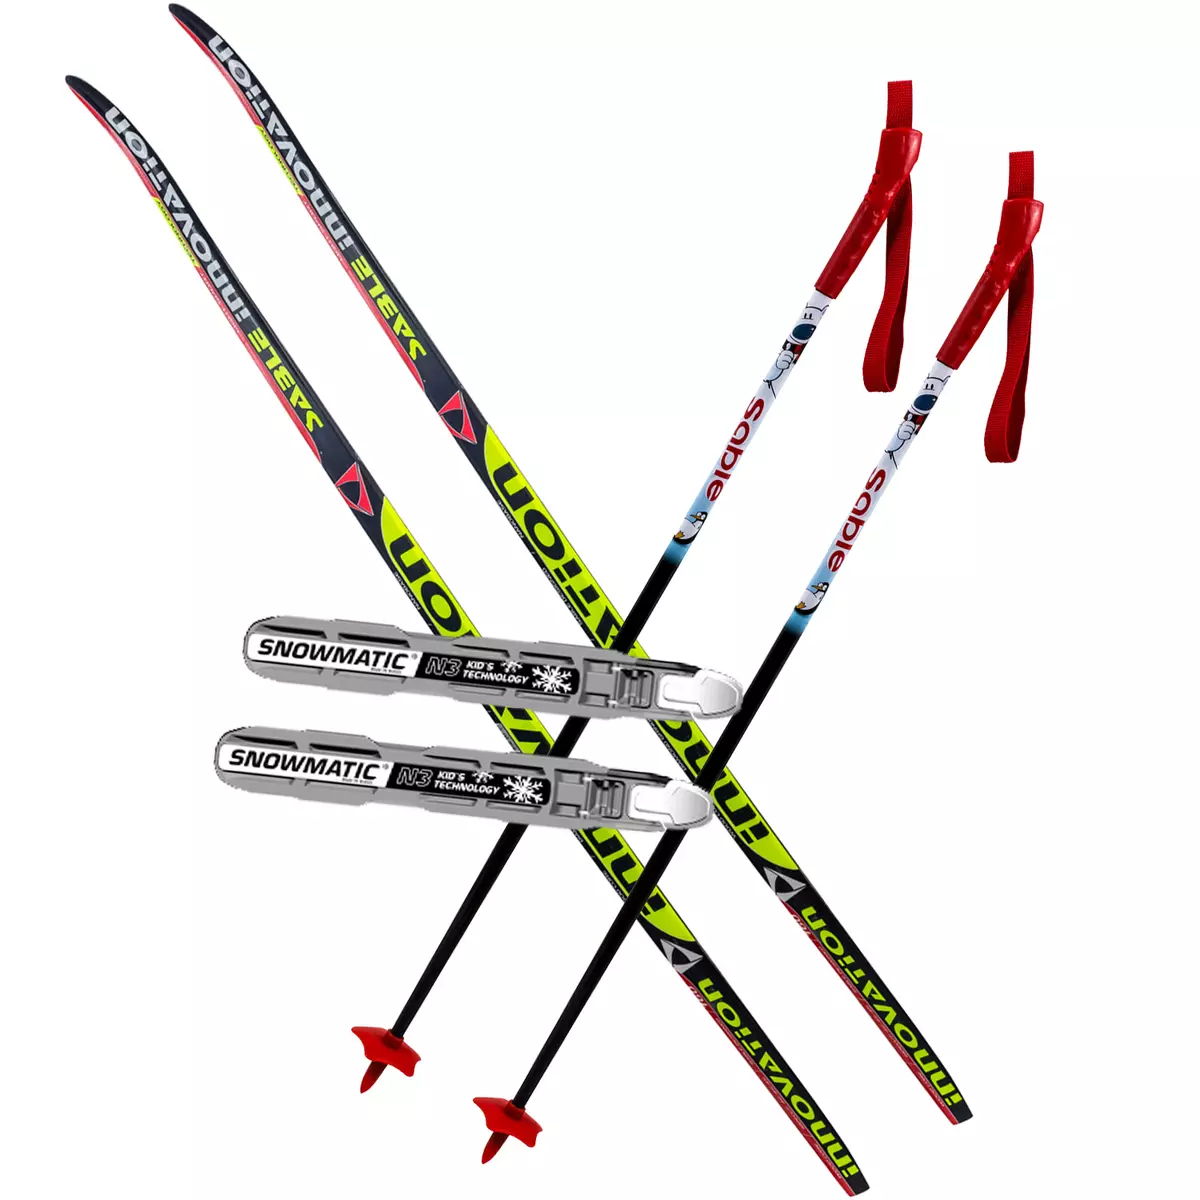 قار تېيىلىش Stc: بالىلار نىڭ سۇلياۋ skis ۋە باشقىلارنى, ئىشلەپچىقارغۇچىدىن كەلگەن قار تېيىلىش sticks قاچىلانغان. سىملىق fastening بىلەن قورال قار تېيىلىش, تەكشۈرۈش قايتا 20253_7